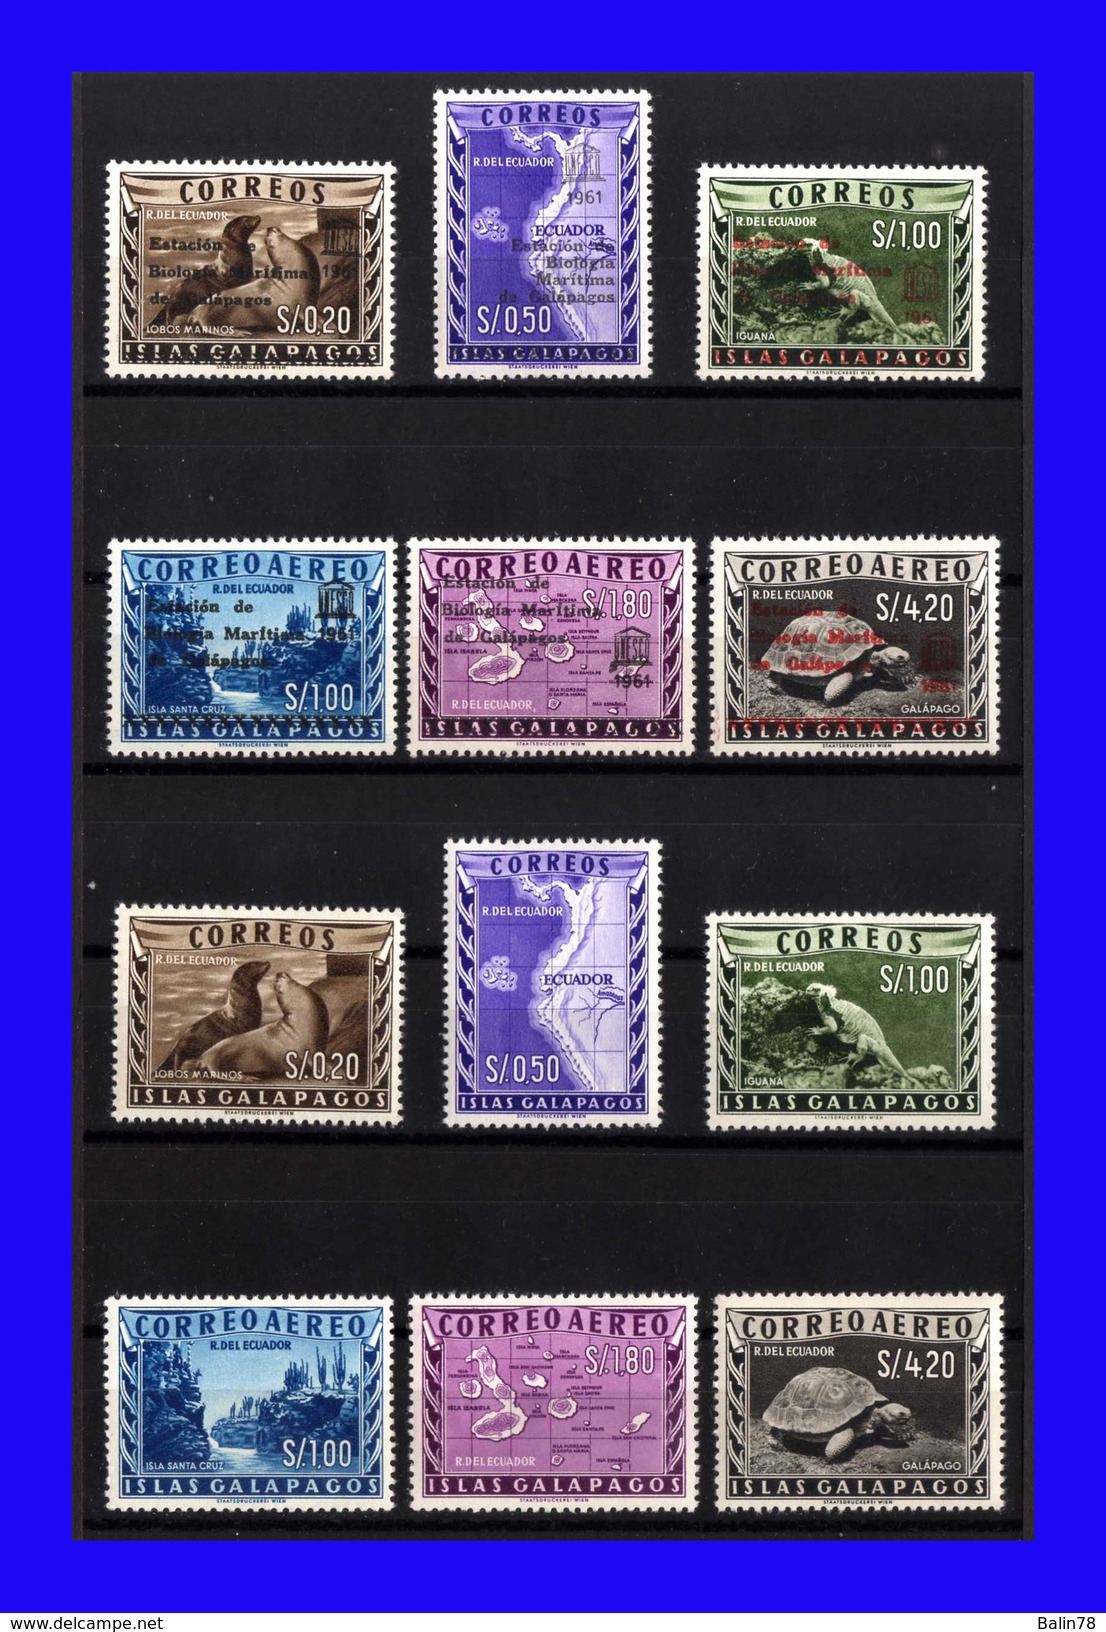 1957 - 1961 - Ecuador - Sc. 684  686 - C 389  C 391 - L 1  L 3 - LC 1  LC 3 - MNH - Lujo - EC-138 - 04 - Ecuador